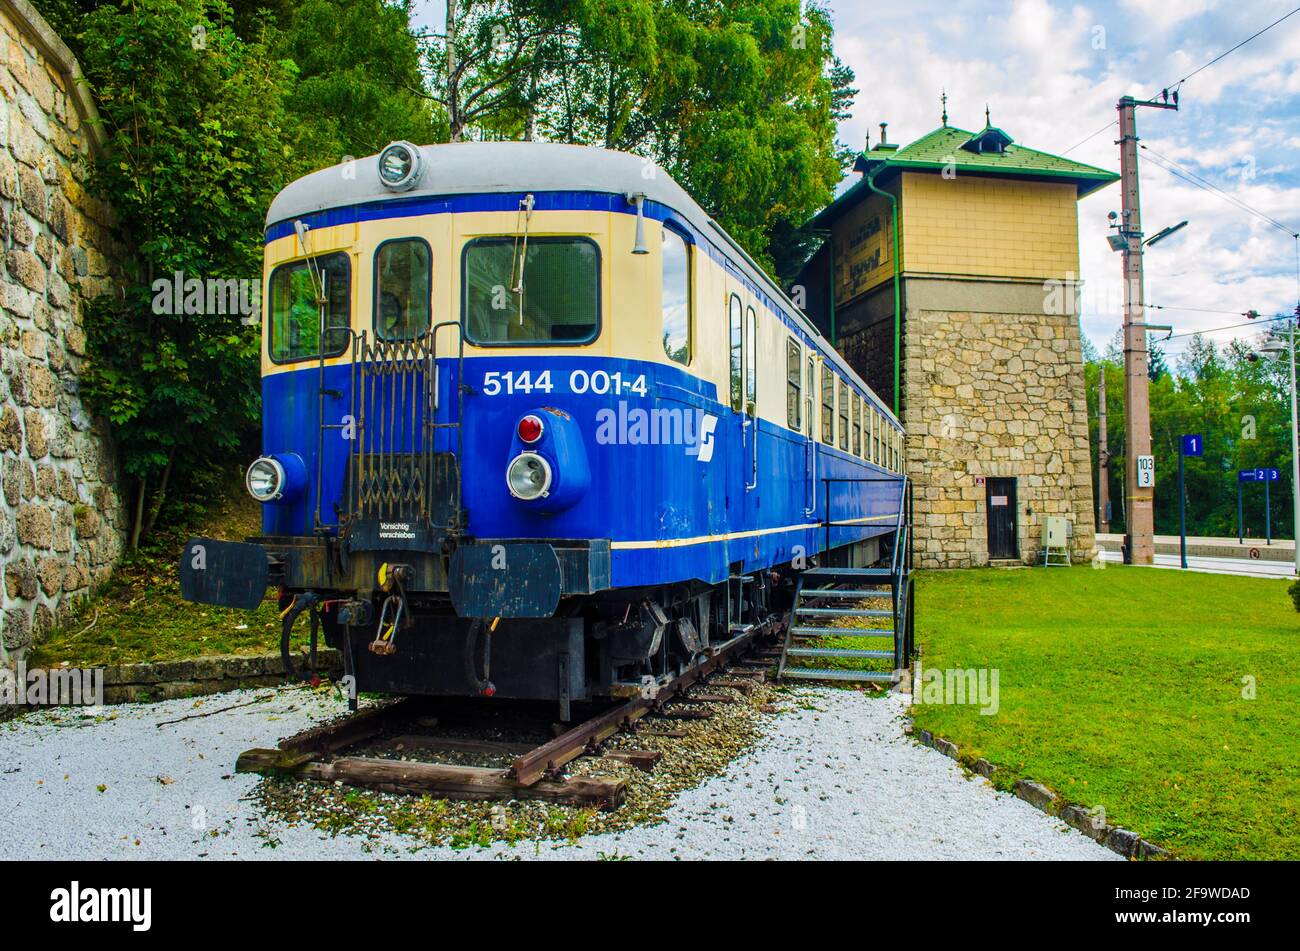 SEMMING, ÖSTERREICH, 3. OKTOBER 2015: Blick auf eine blaue Lokomotive vor dem Hauptbahnhof in semming, die ein Symbol dieser unesco-Welt ist Stockfoto